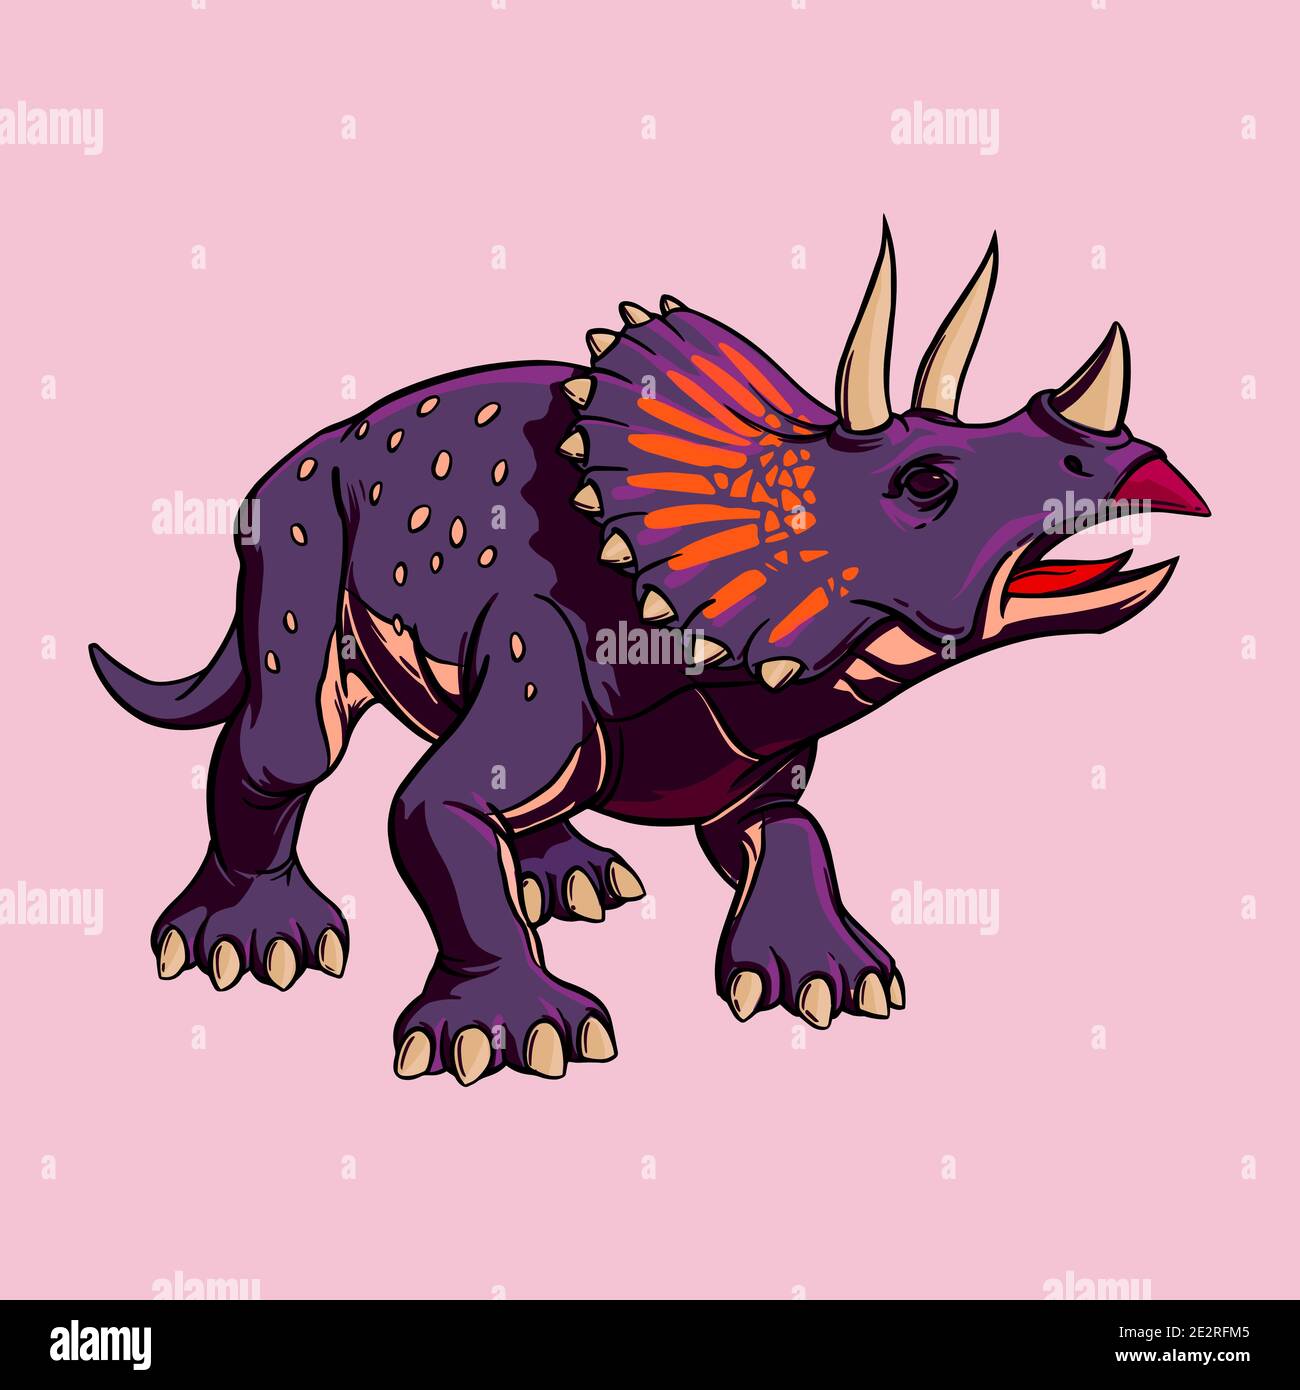 Disegno cartoon a colori del dinosauro Triceratops per la stampa. Illustrazione per bambini. Clipart vettoriali Illustrazione Vettoriale